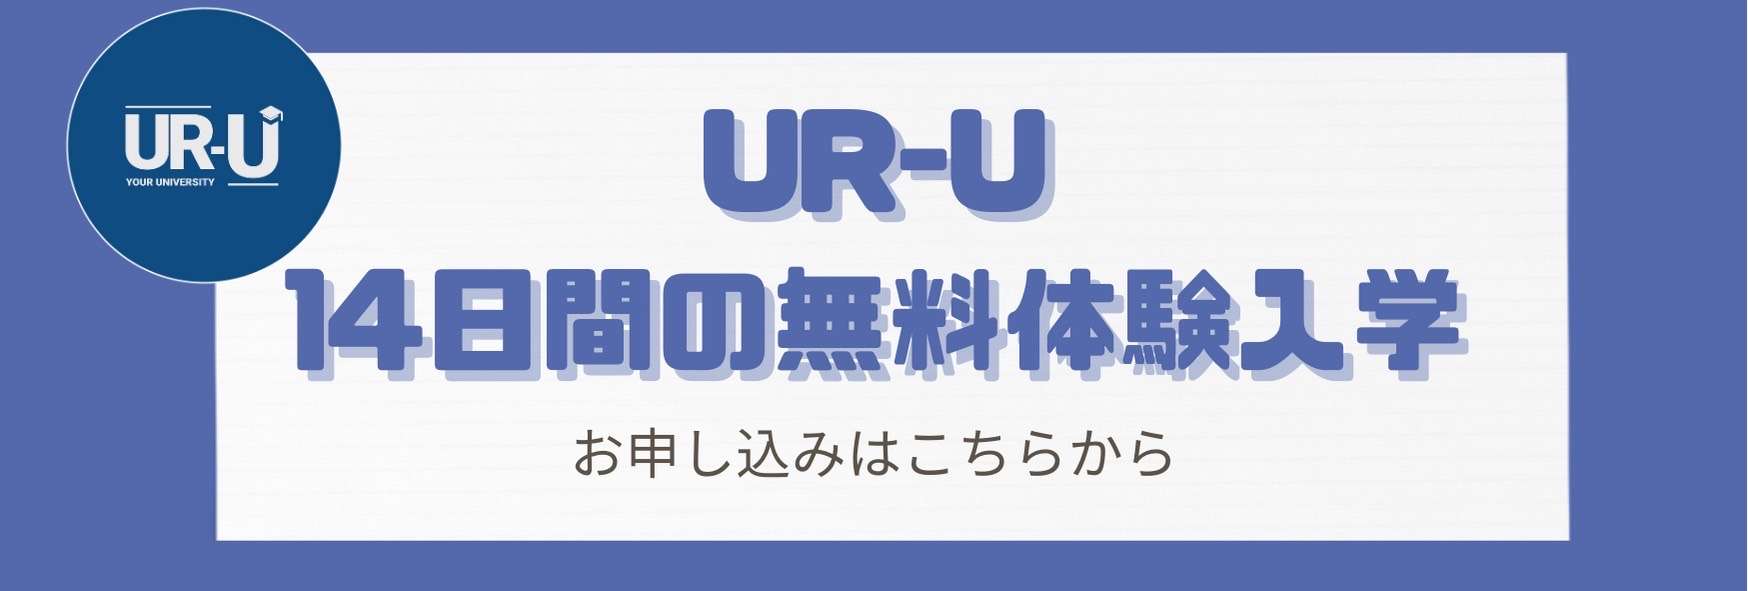 https://member.ur-uni.com/uru/new?mode=zou&original_id=100002422